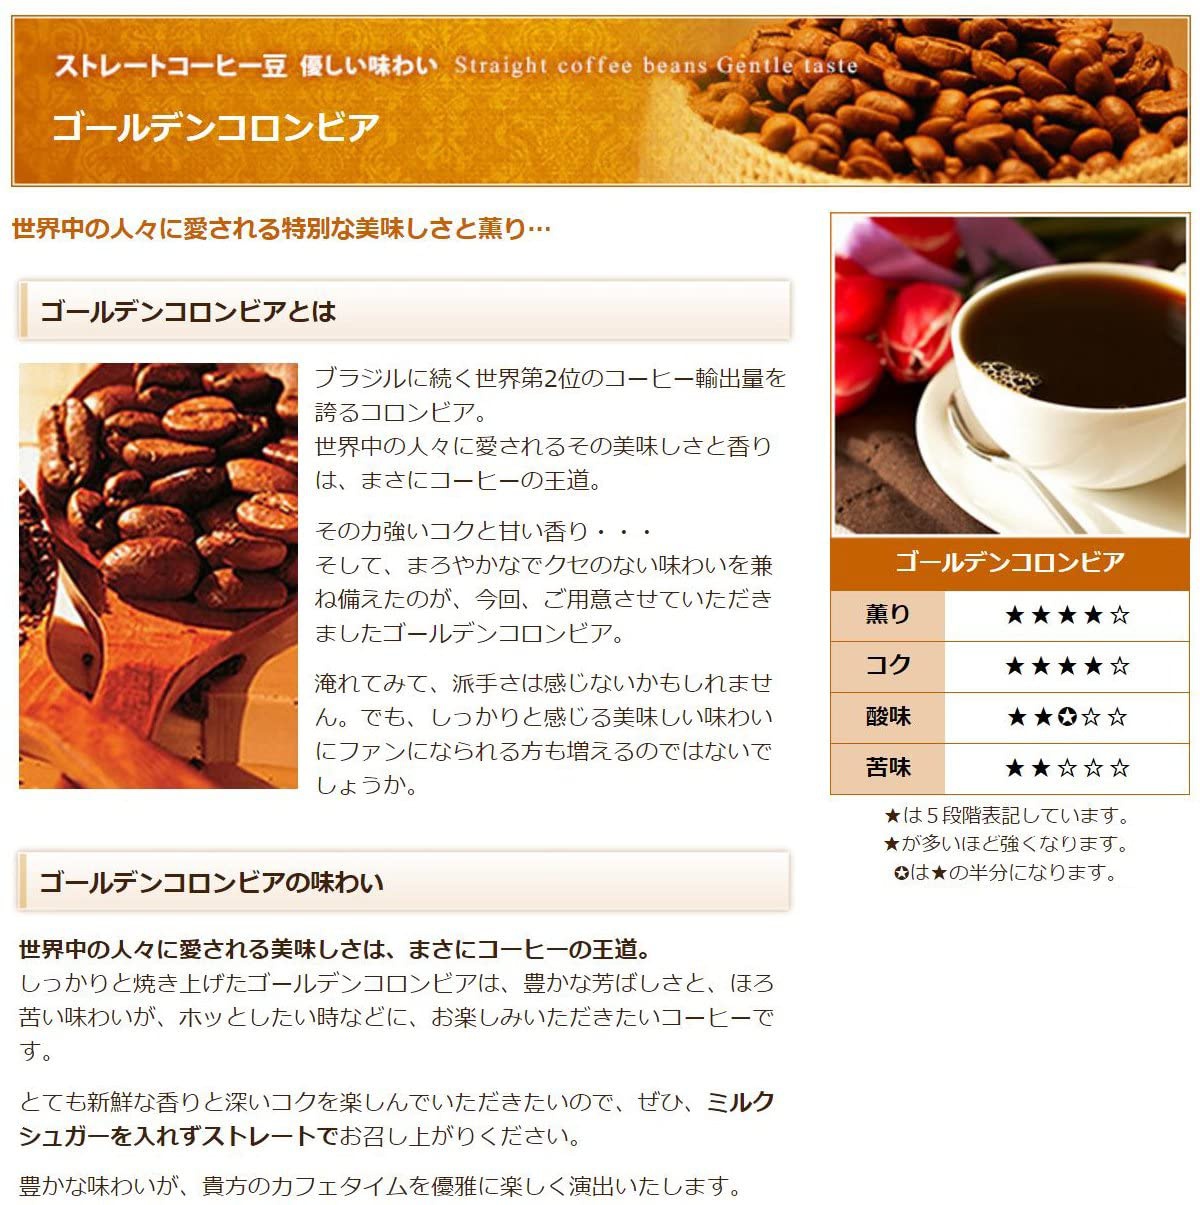 澤井珈琲(サワイコーヒー) インスタント コーヒーの商品画像2 